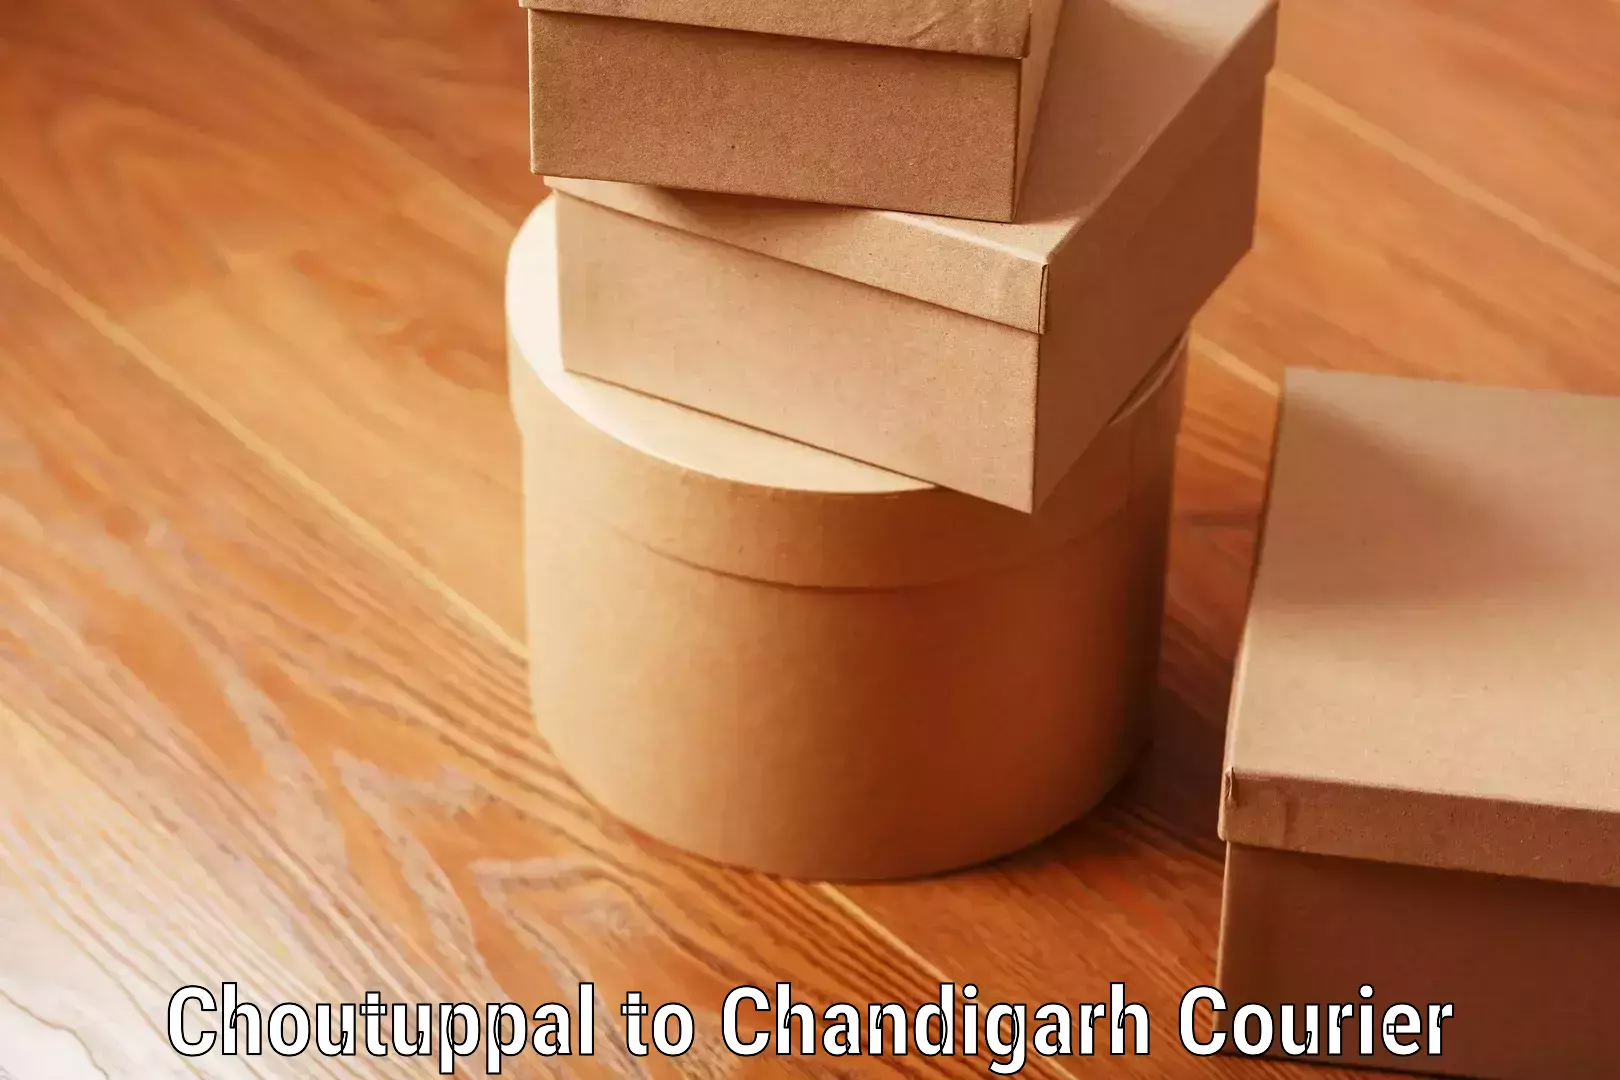 Luggage transport company Choutuppal to Chandigarh